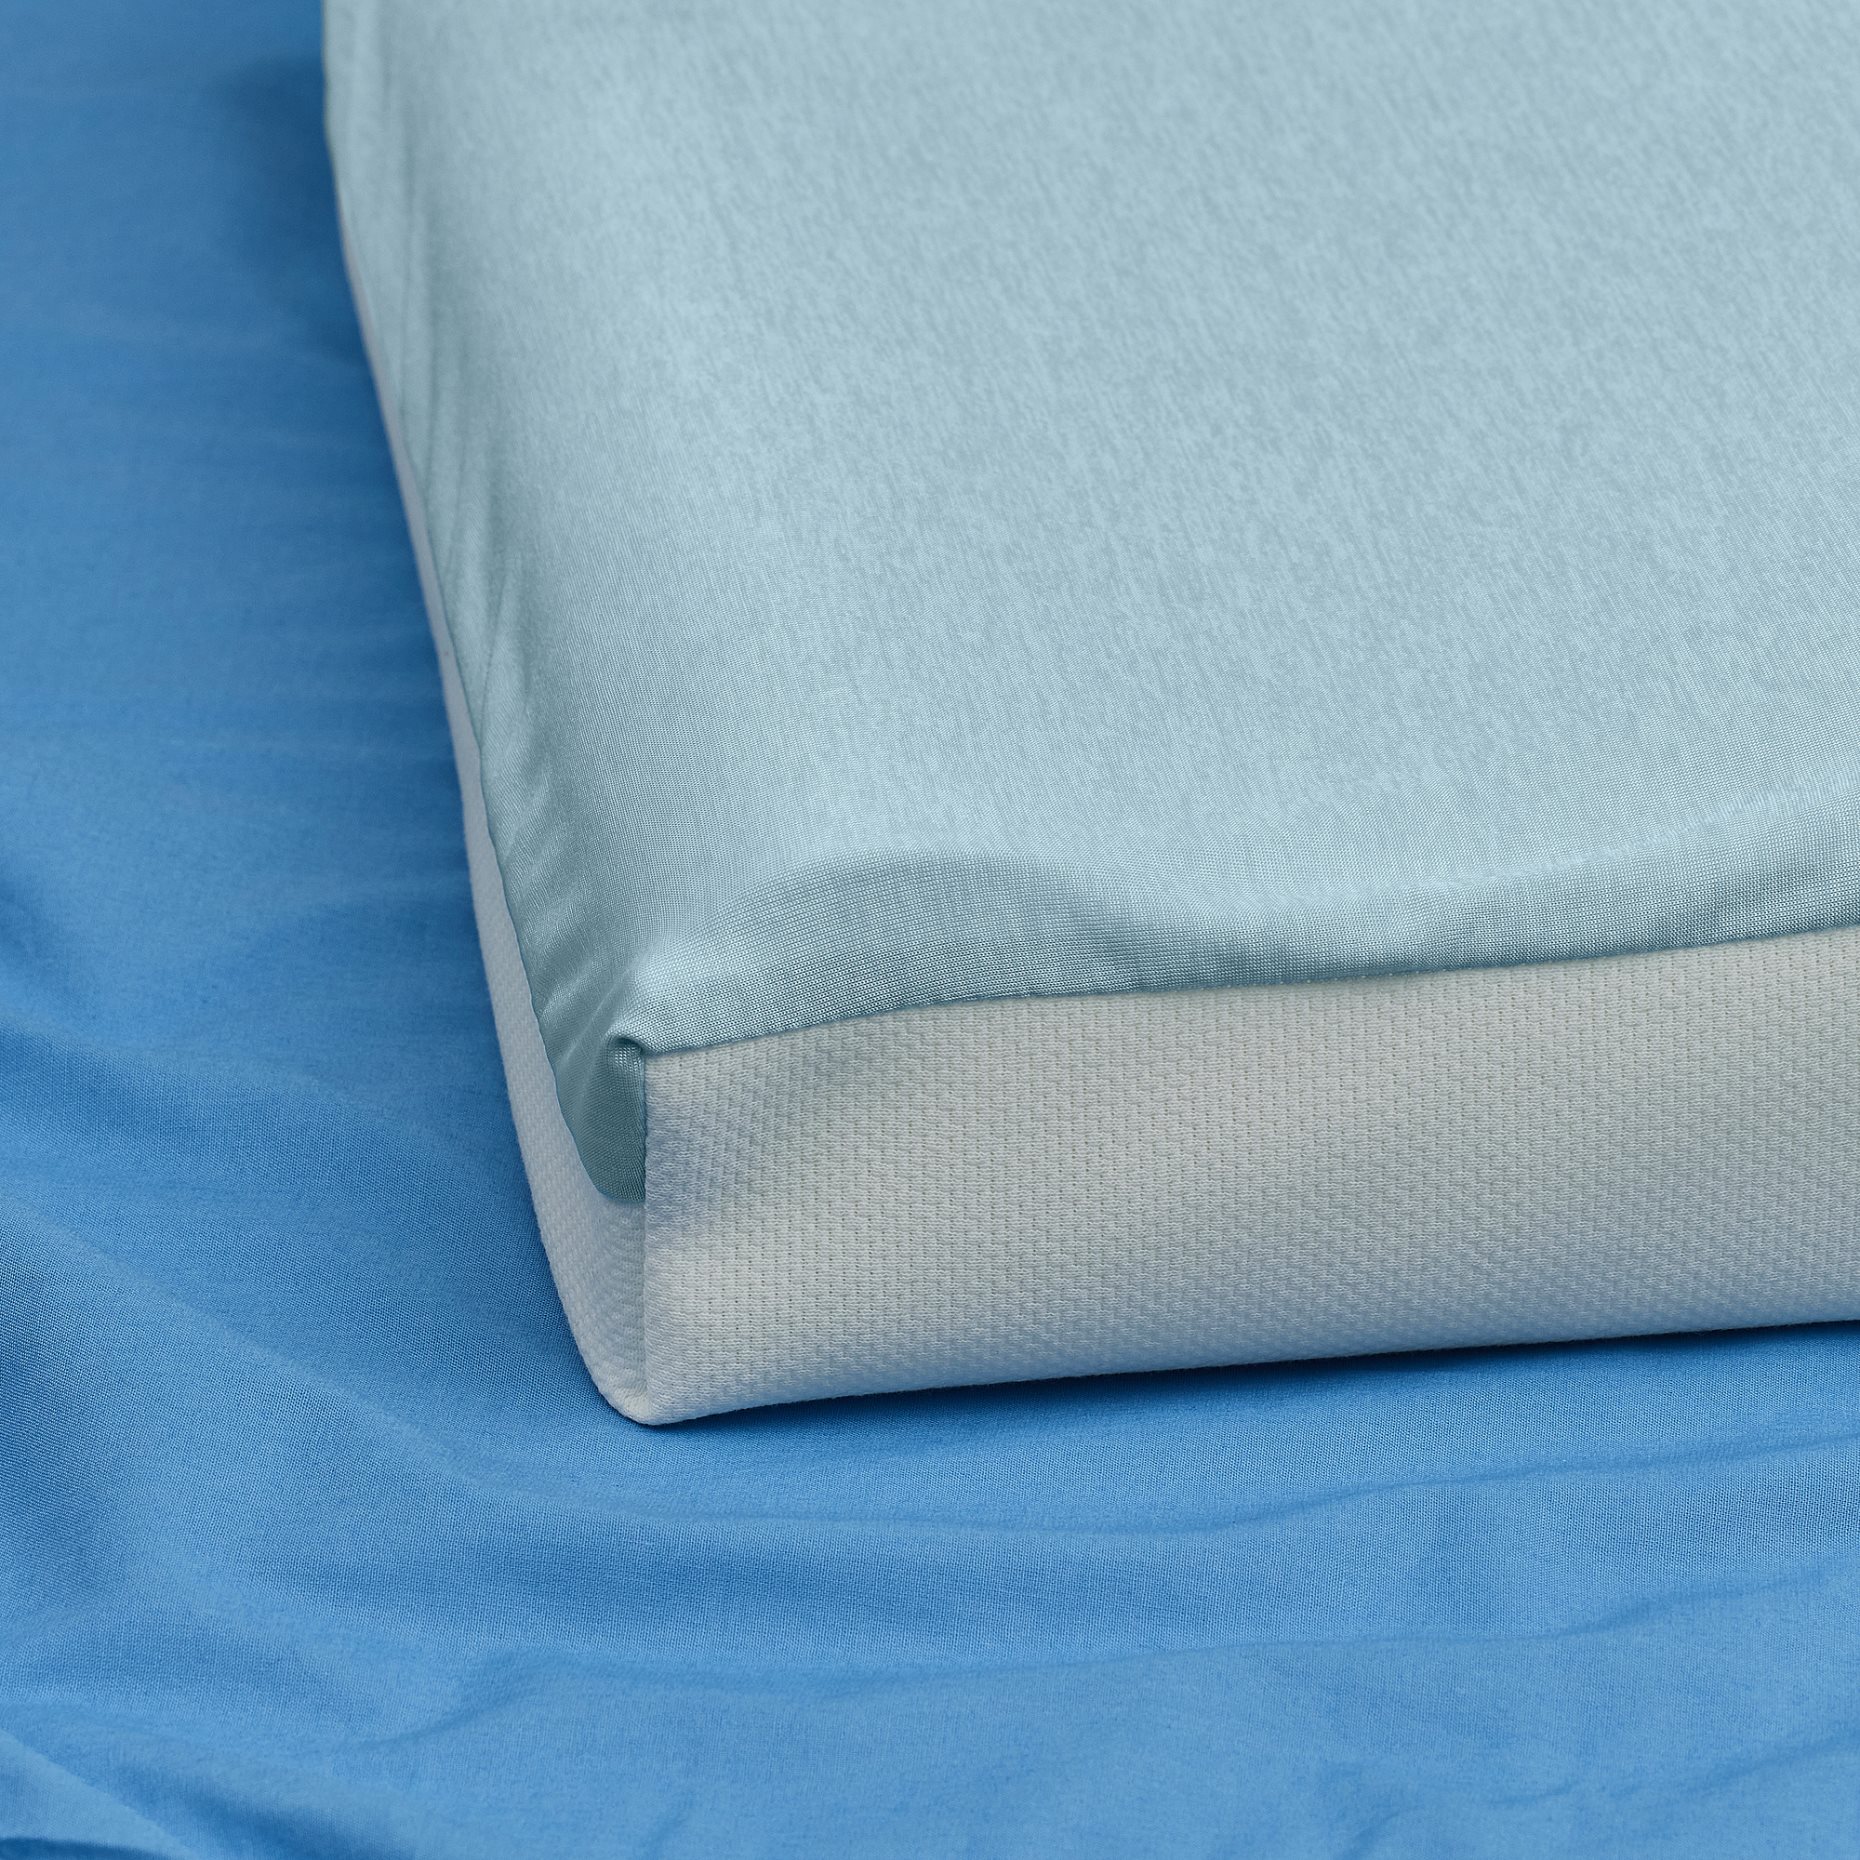 SPETSHAGTORN, ergonomic pillow for side/back sleeper, 33x45 cm, 205.785.09